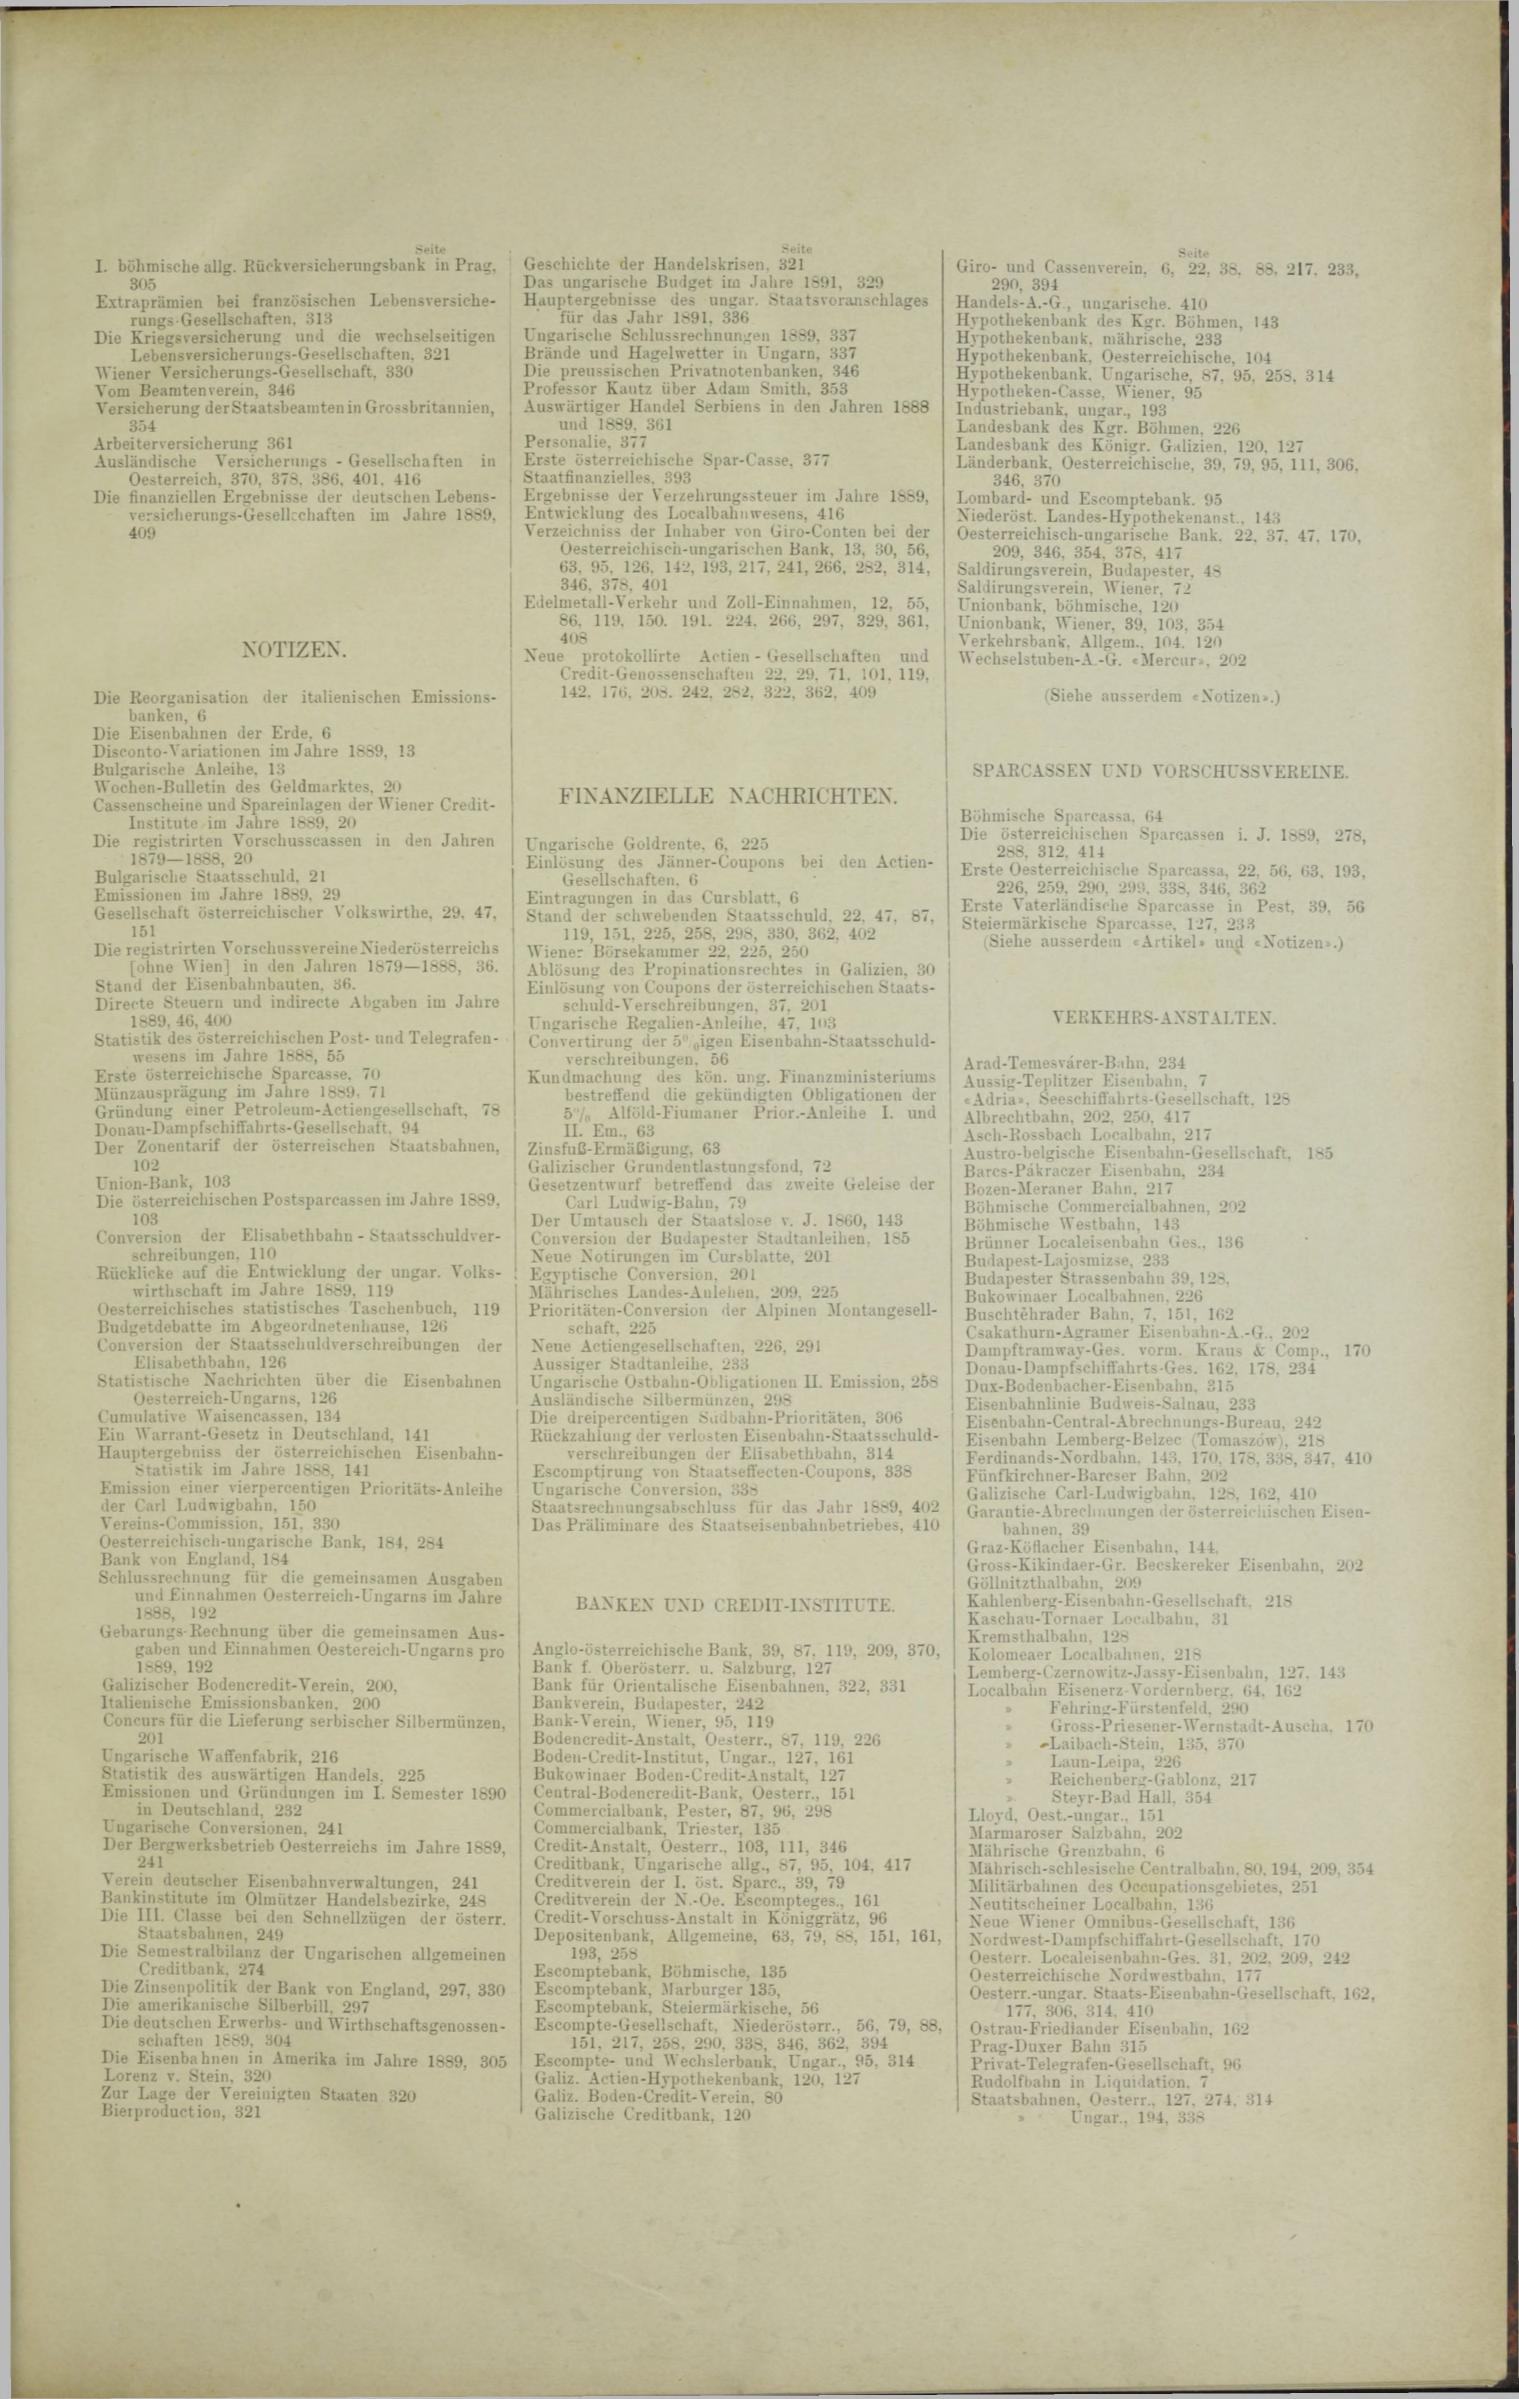 Der Tresor 27.03.1890 - Seite 11